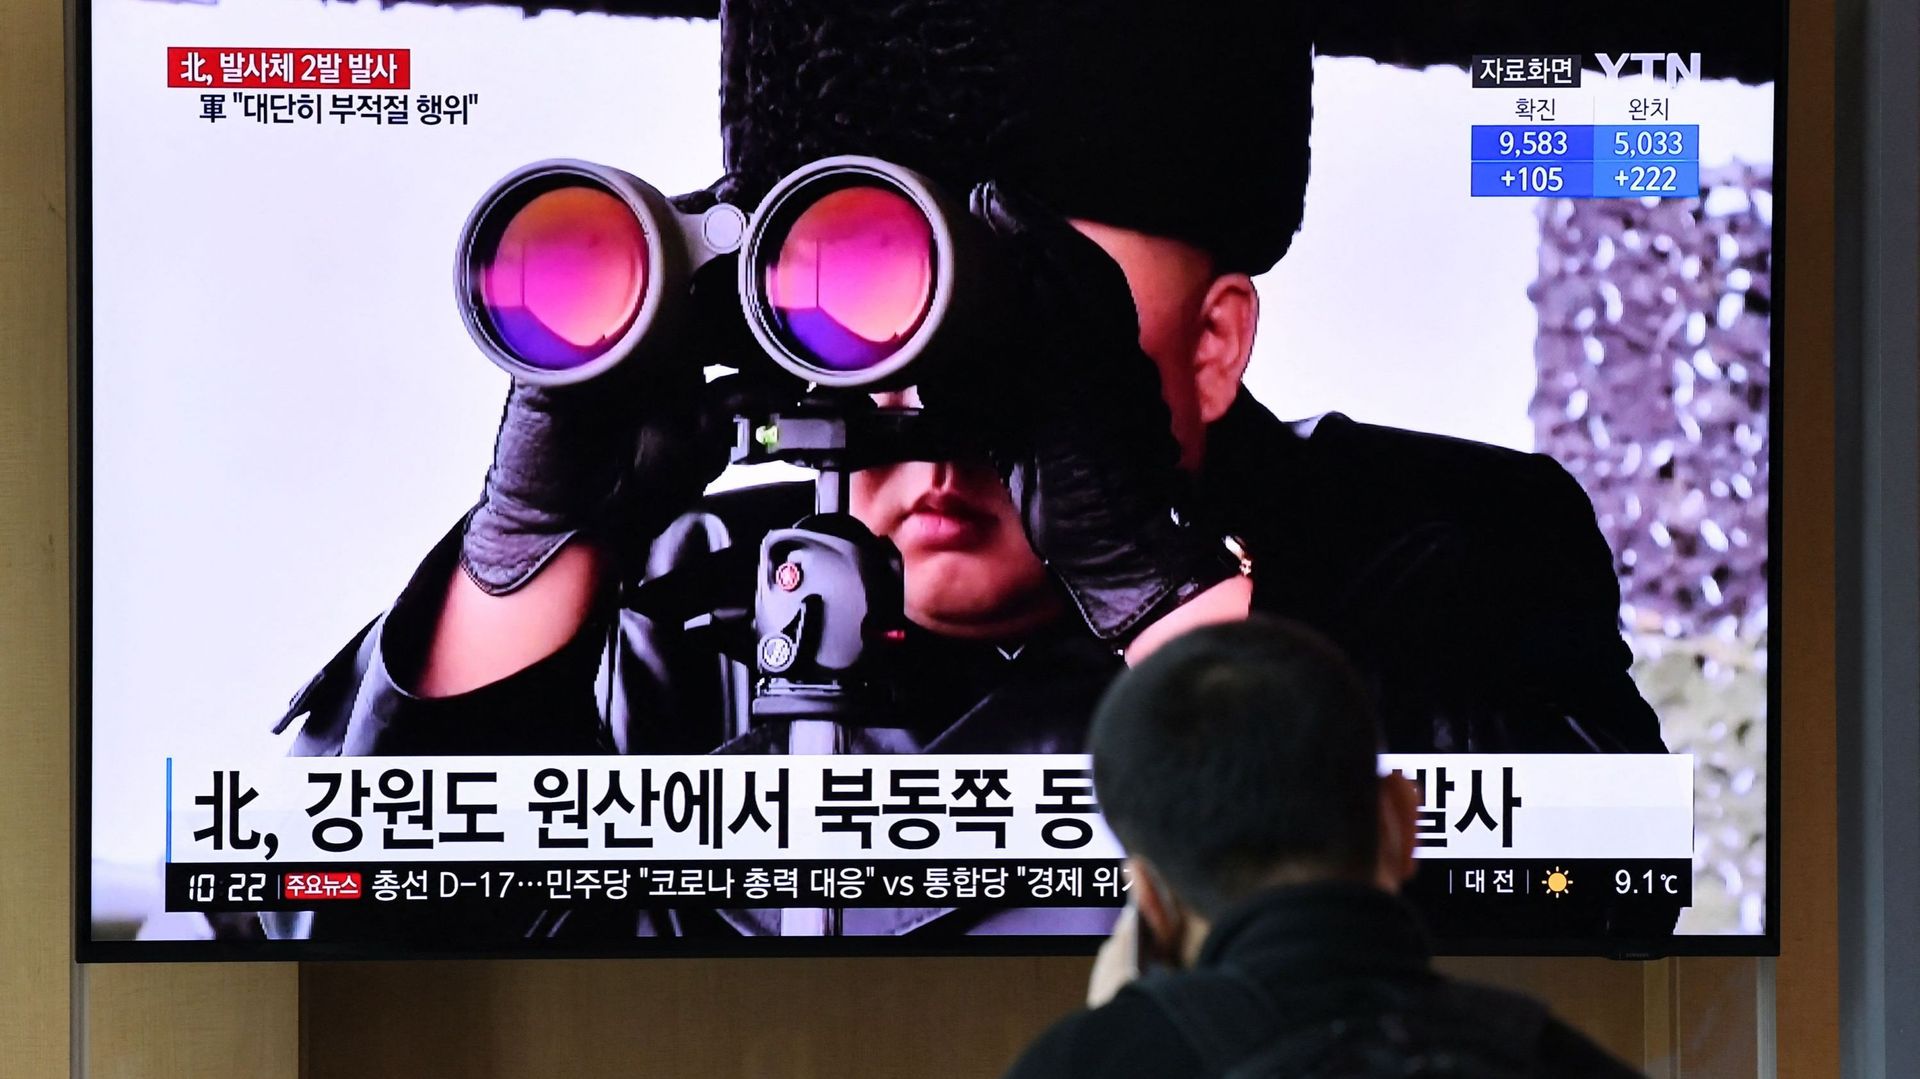 "La République populaire de Corée du Nord a procédé le 30 septembre à un tir d’essai d’un missile anti-aérien qu’elle a récemment développé", a annoncé l’agence nord-coréenne KCNA.